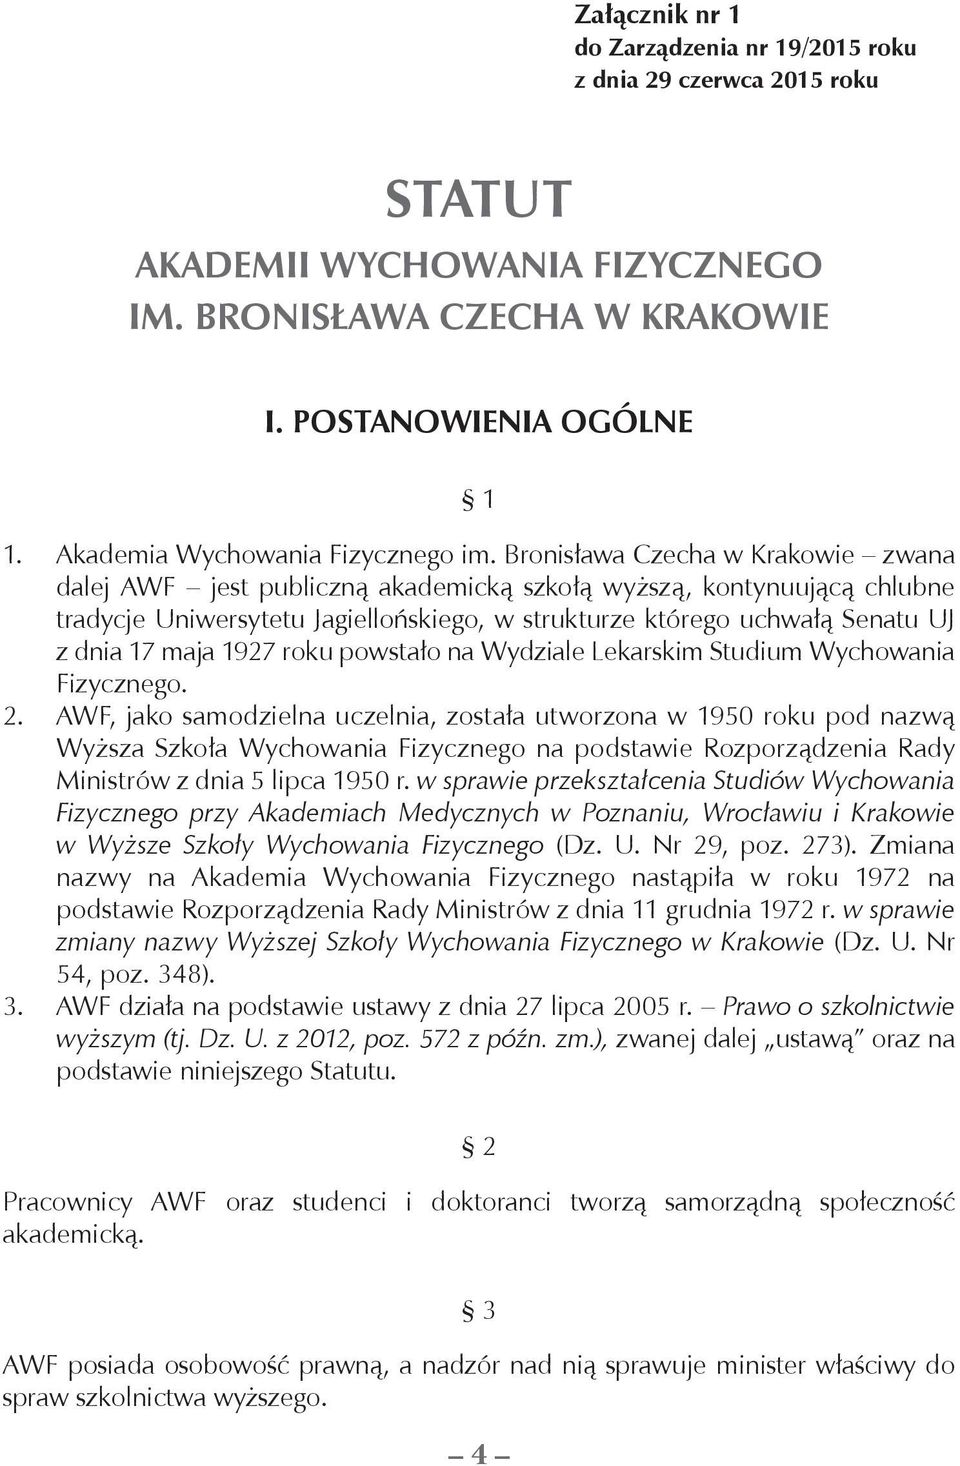 Bronisława Czecha w Krakowie zwana dalej AWF jest publiczną akademicką szkołą wyższą, kontynuującą chlubne tradycje Uniwersytetu Jagiellońskiego, w strukturze którego uchwałą Senatu UJ z dnia 17 maja